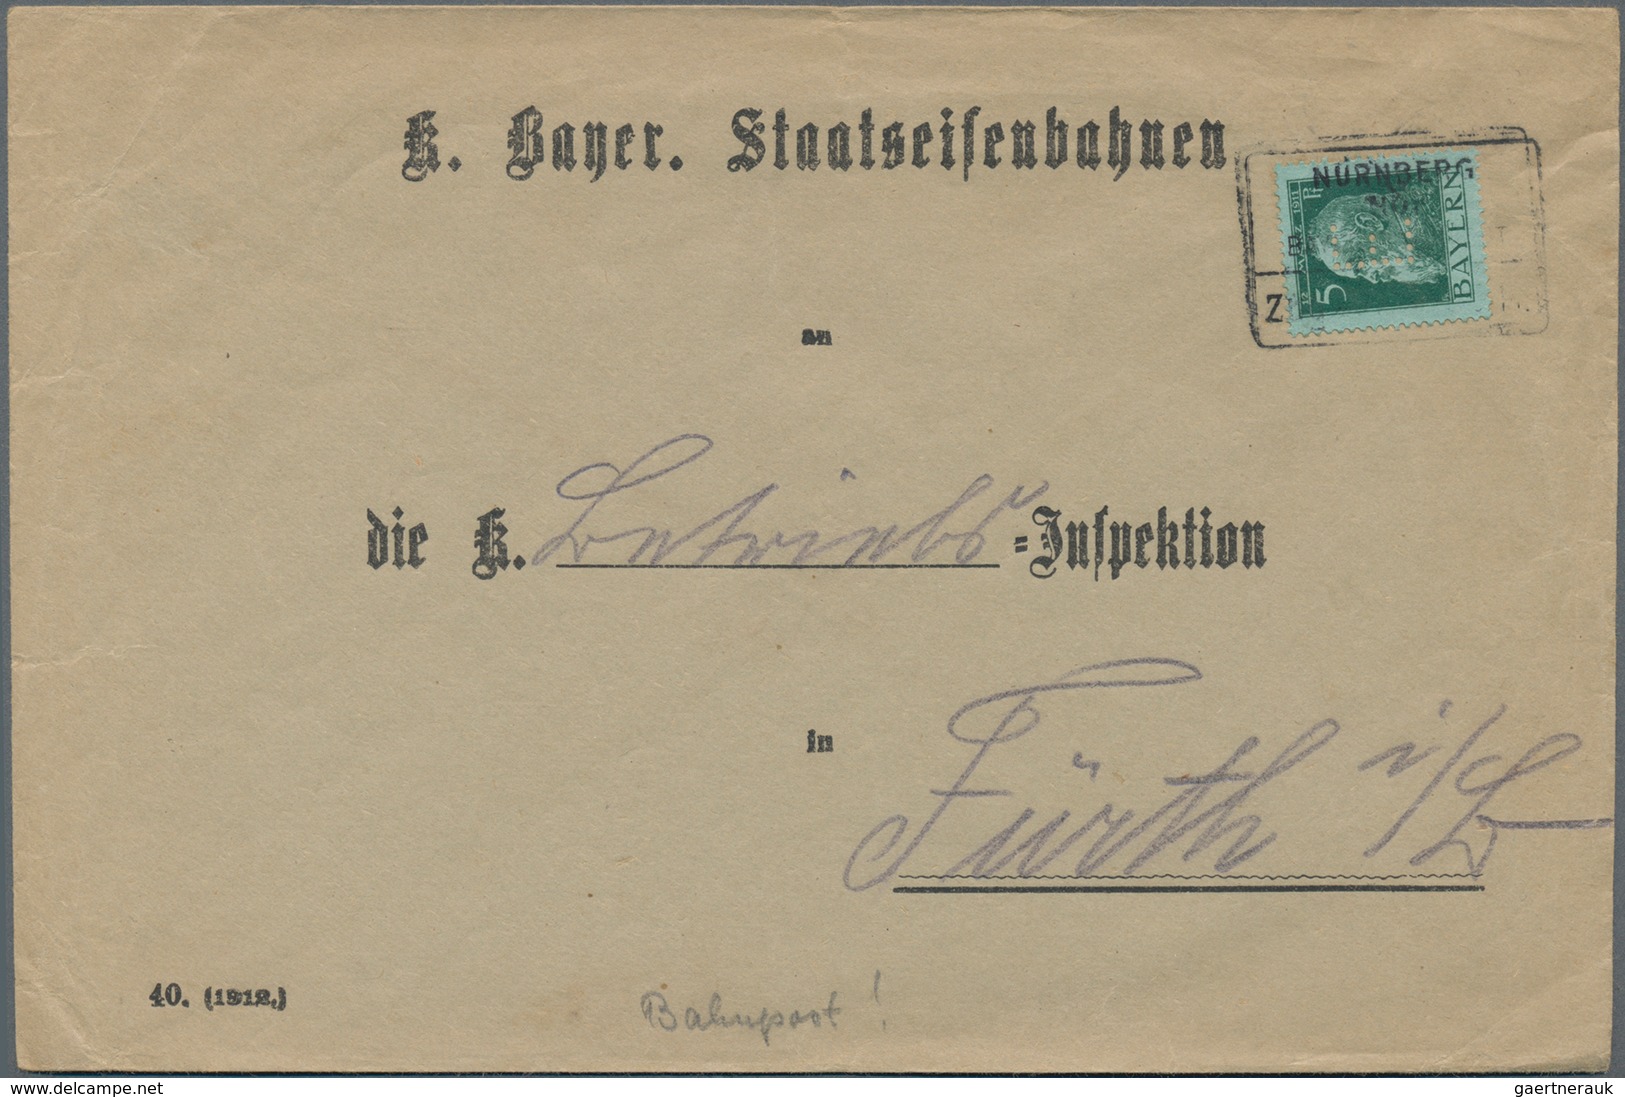 Bayern - Marken und Briefe: 1870/1920 (ca.), vielseitige Partie von fast 150 Briefen und Karten, dab